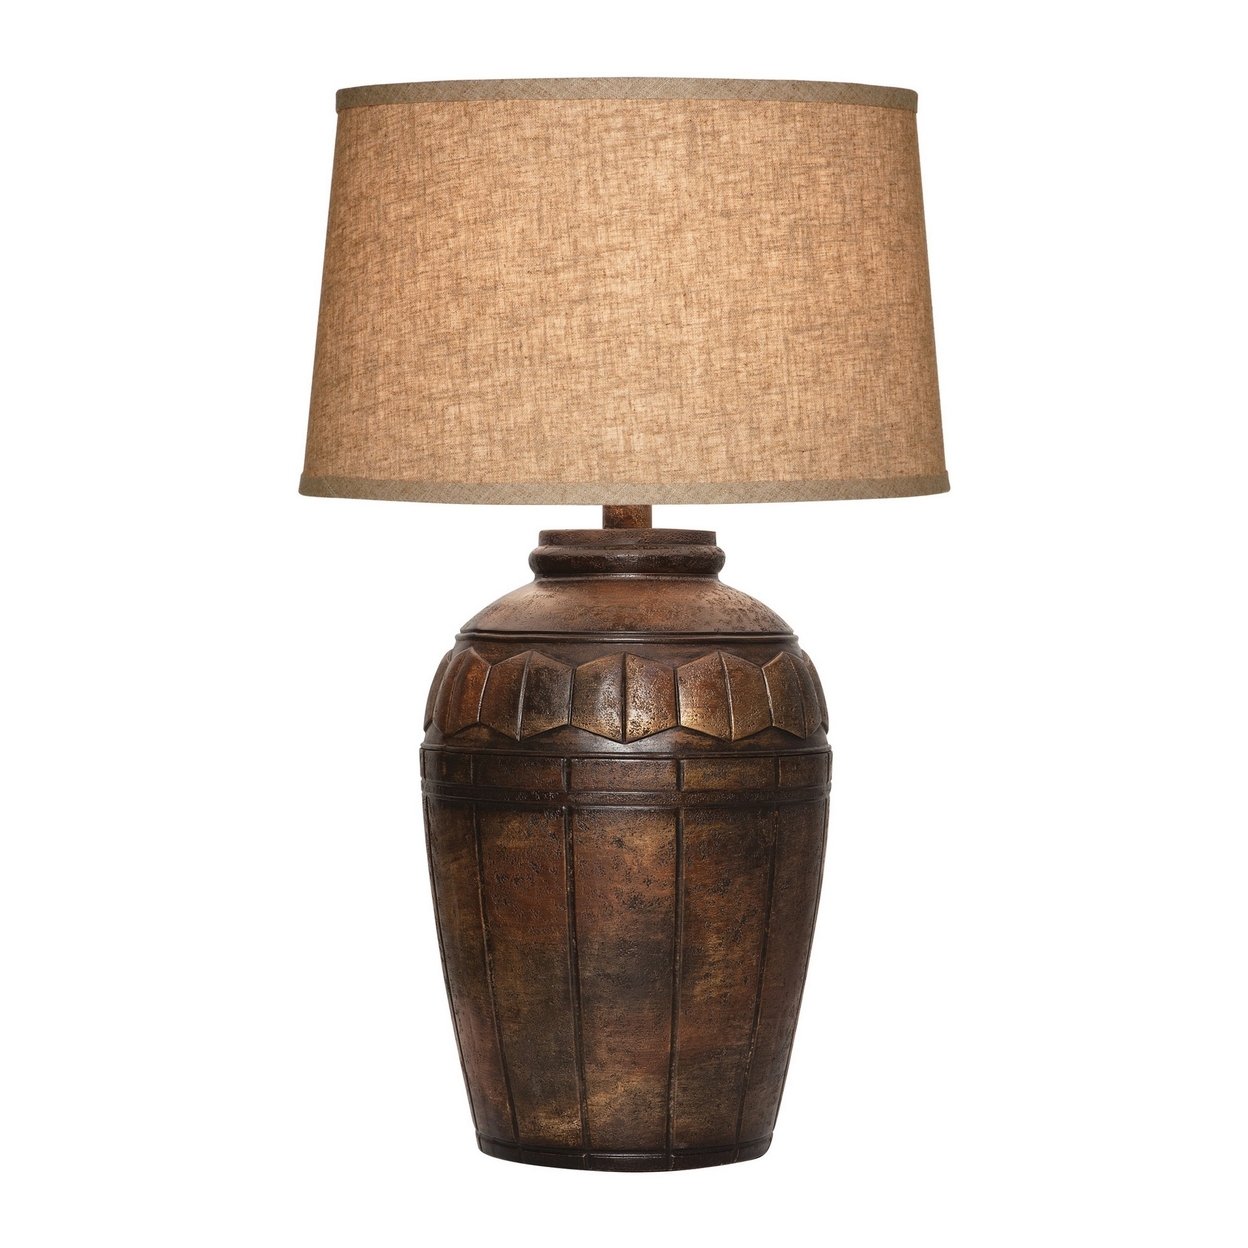 29 Inch Table Lamp, Fabric Drum Shade, Hexagonal Carvings, Dark Brown - Saltoro Sherpi